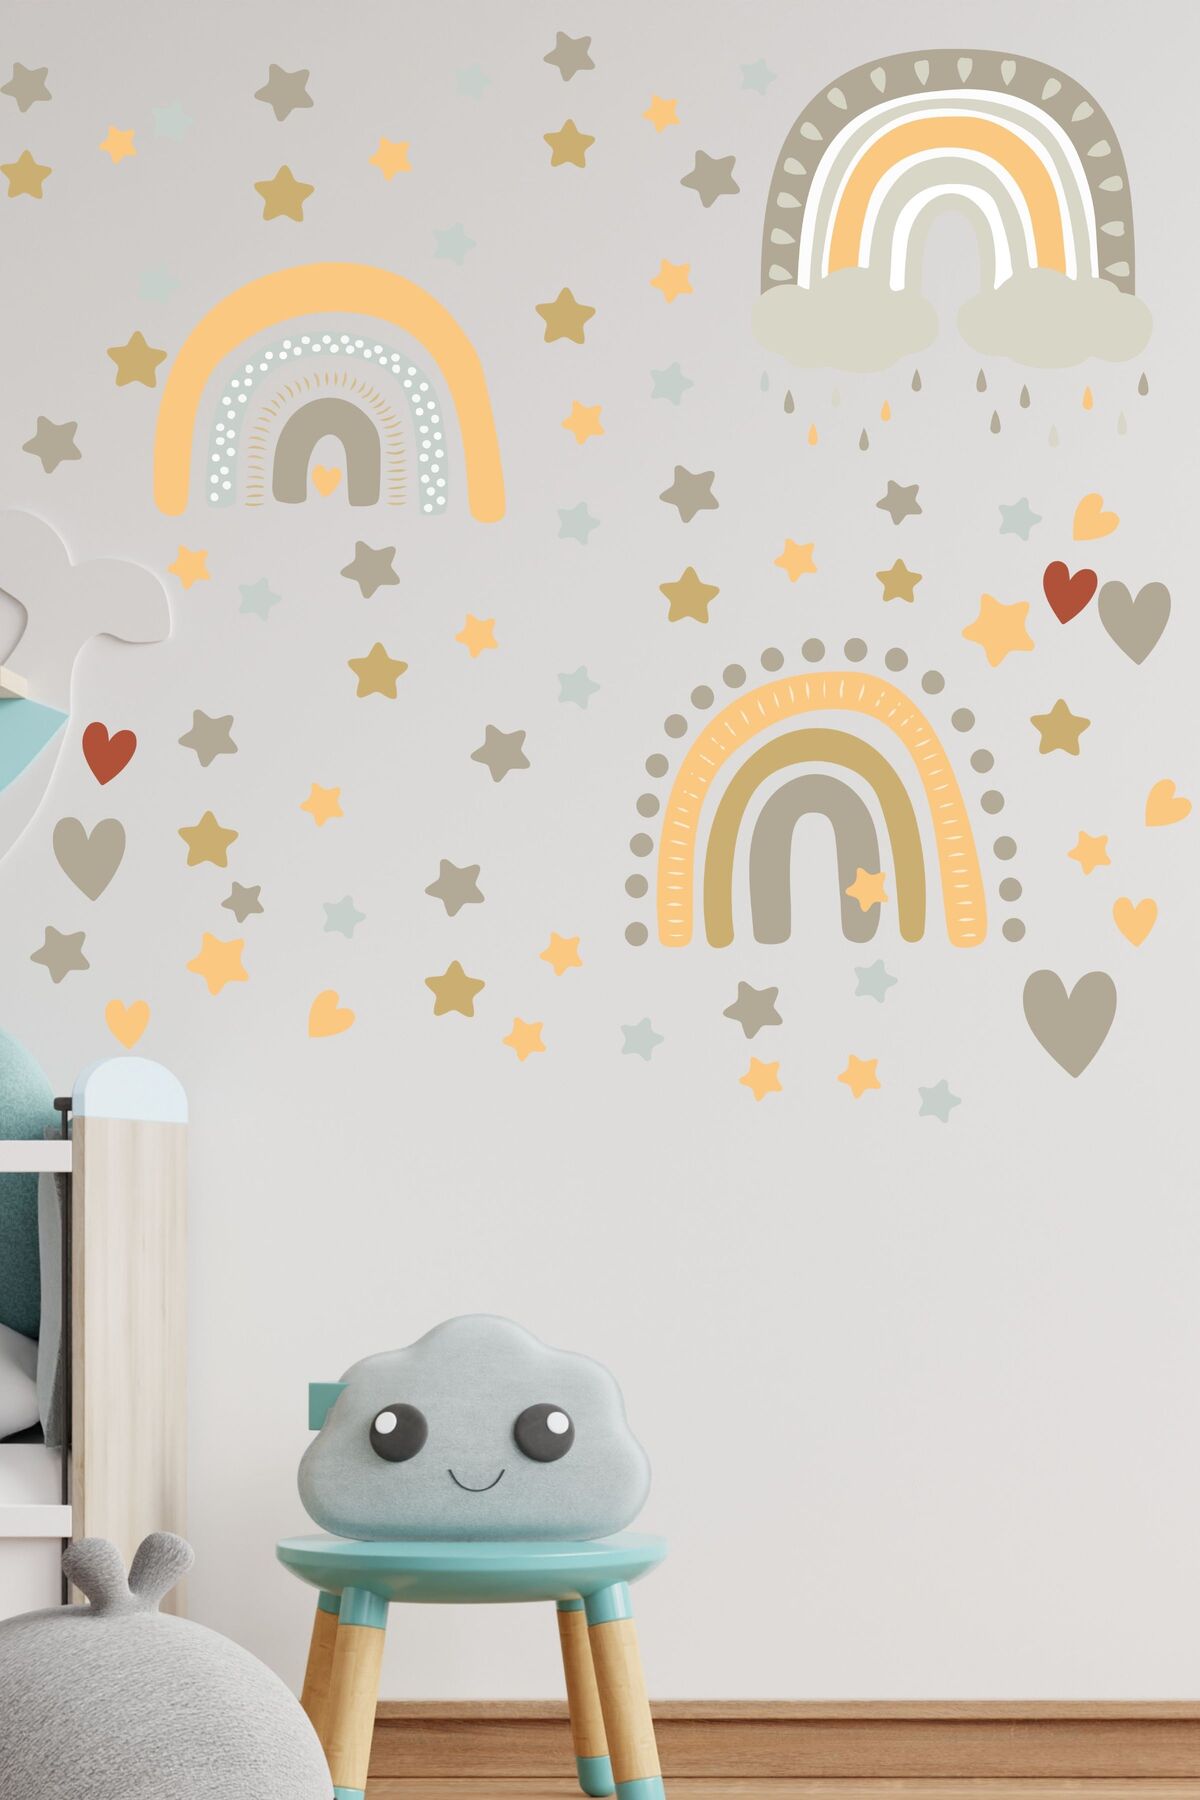 Çocuk Bebek Odası Sticker Seti, Boho Gökkuşağı Duvar Dekoru, Çocuk ve Bebek Odası Duvar Stickerı